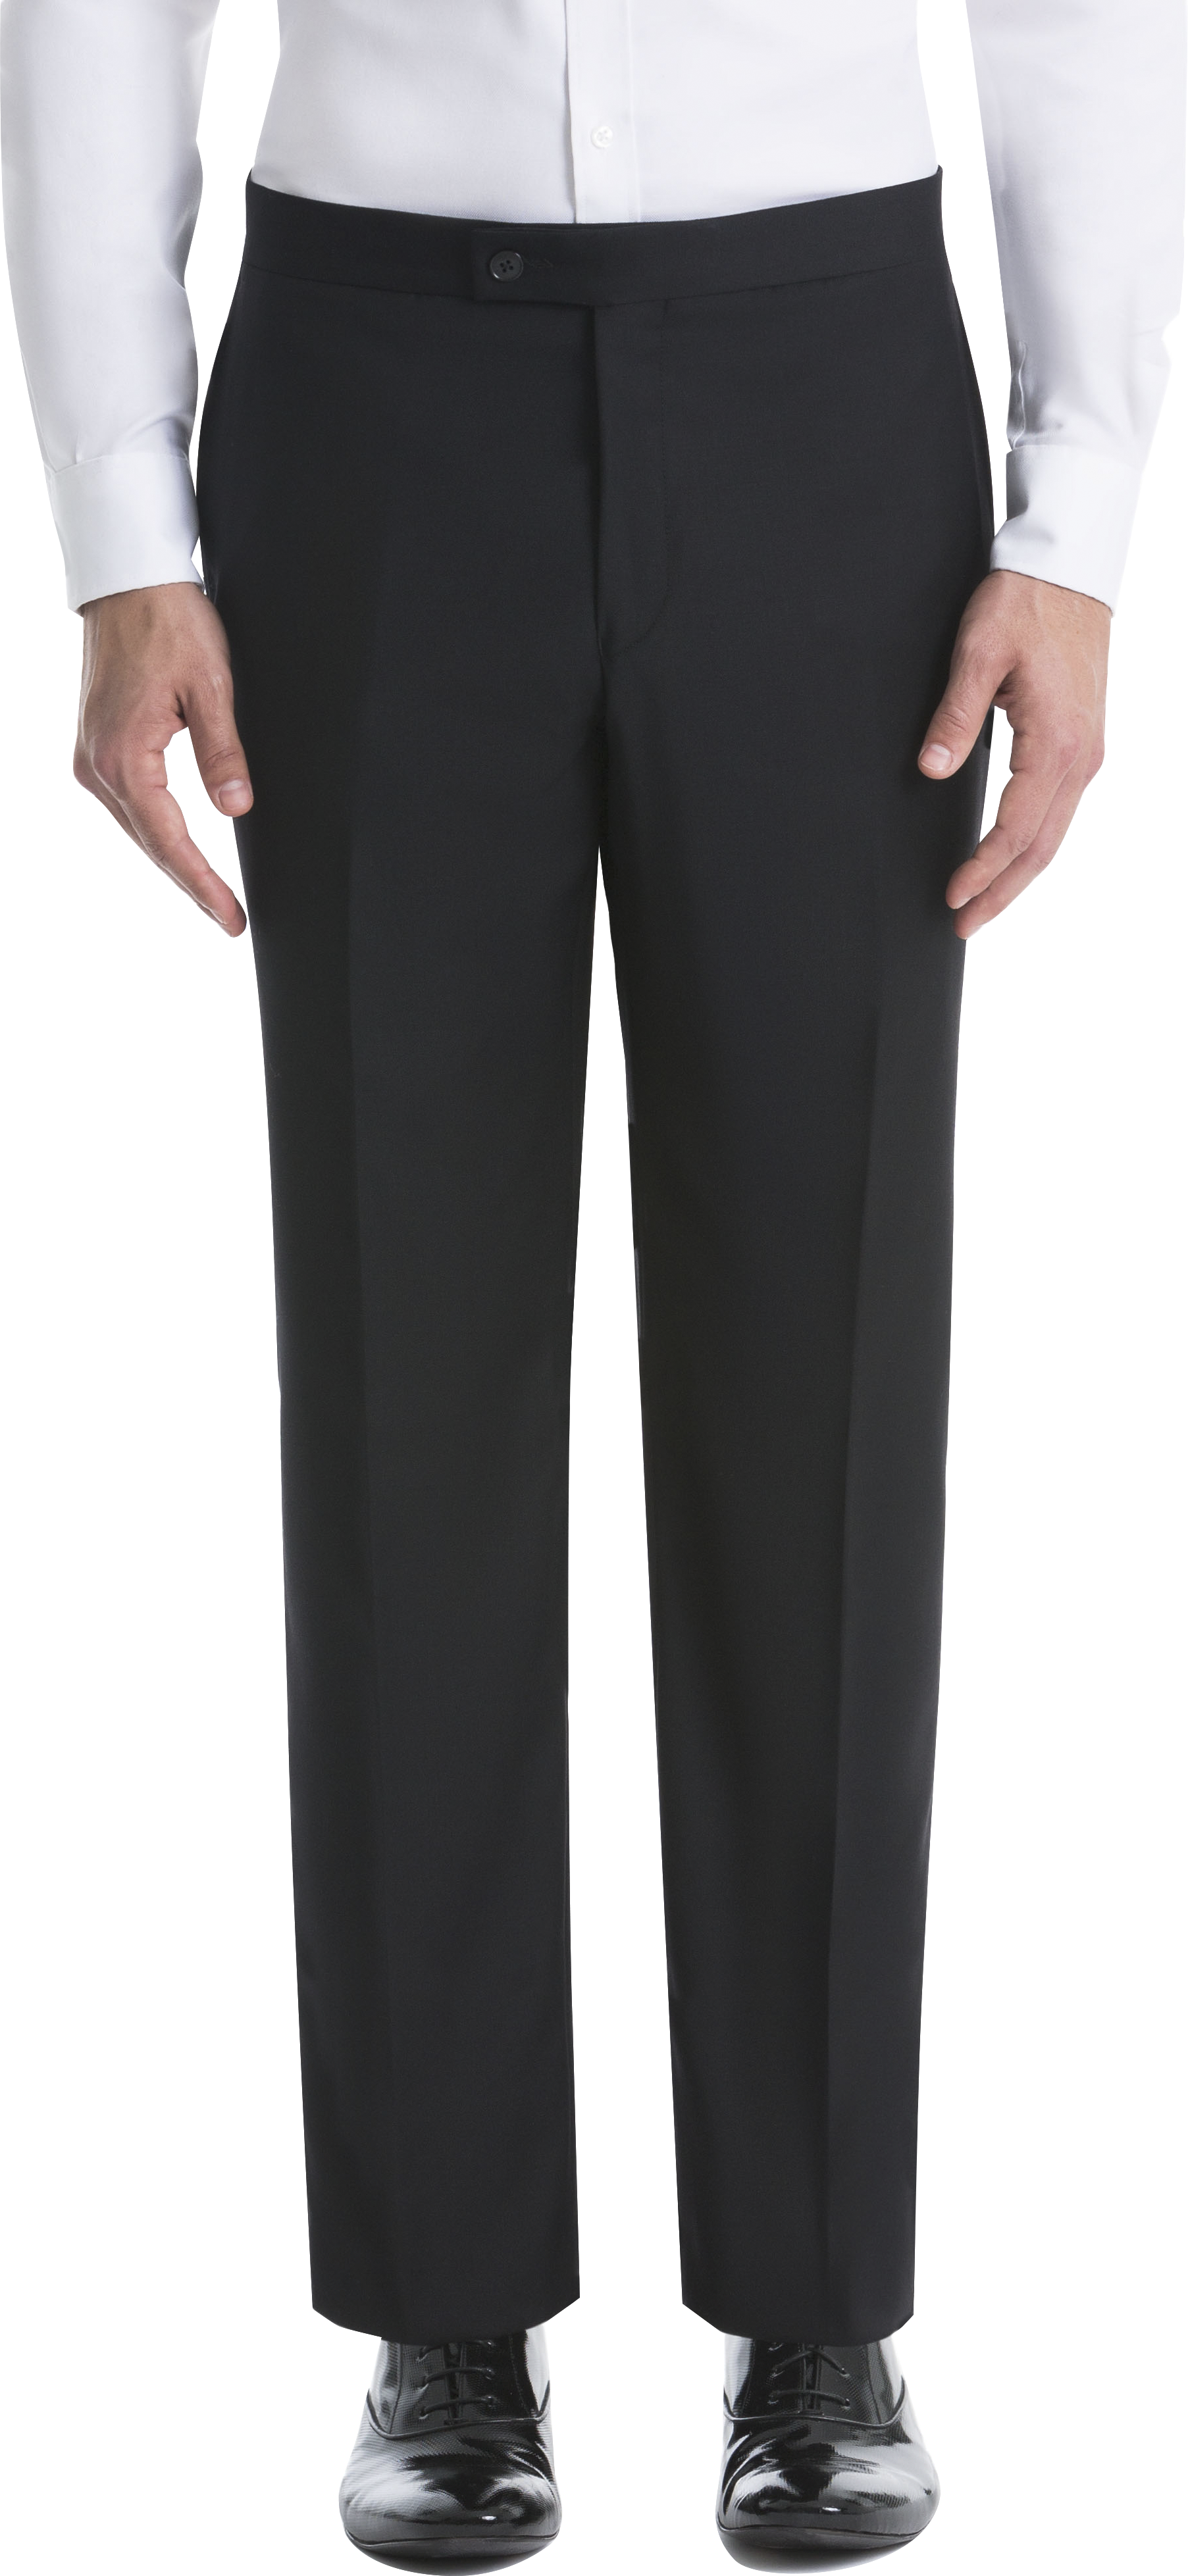 Lauren By Ralph Lauren Classic Fit Suit Separates Tuxedo Pants, Black - Mens Suits - Men's Wearhouse